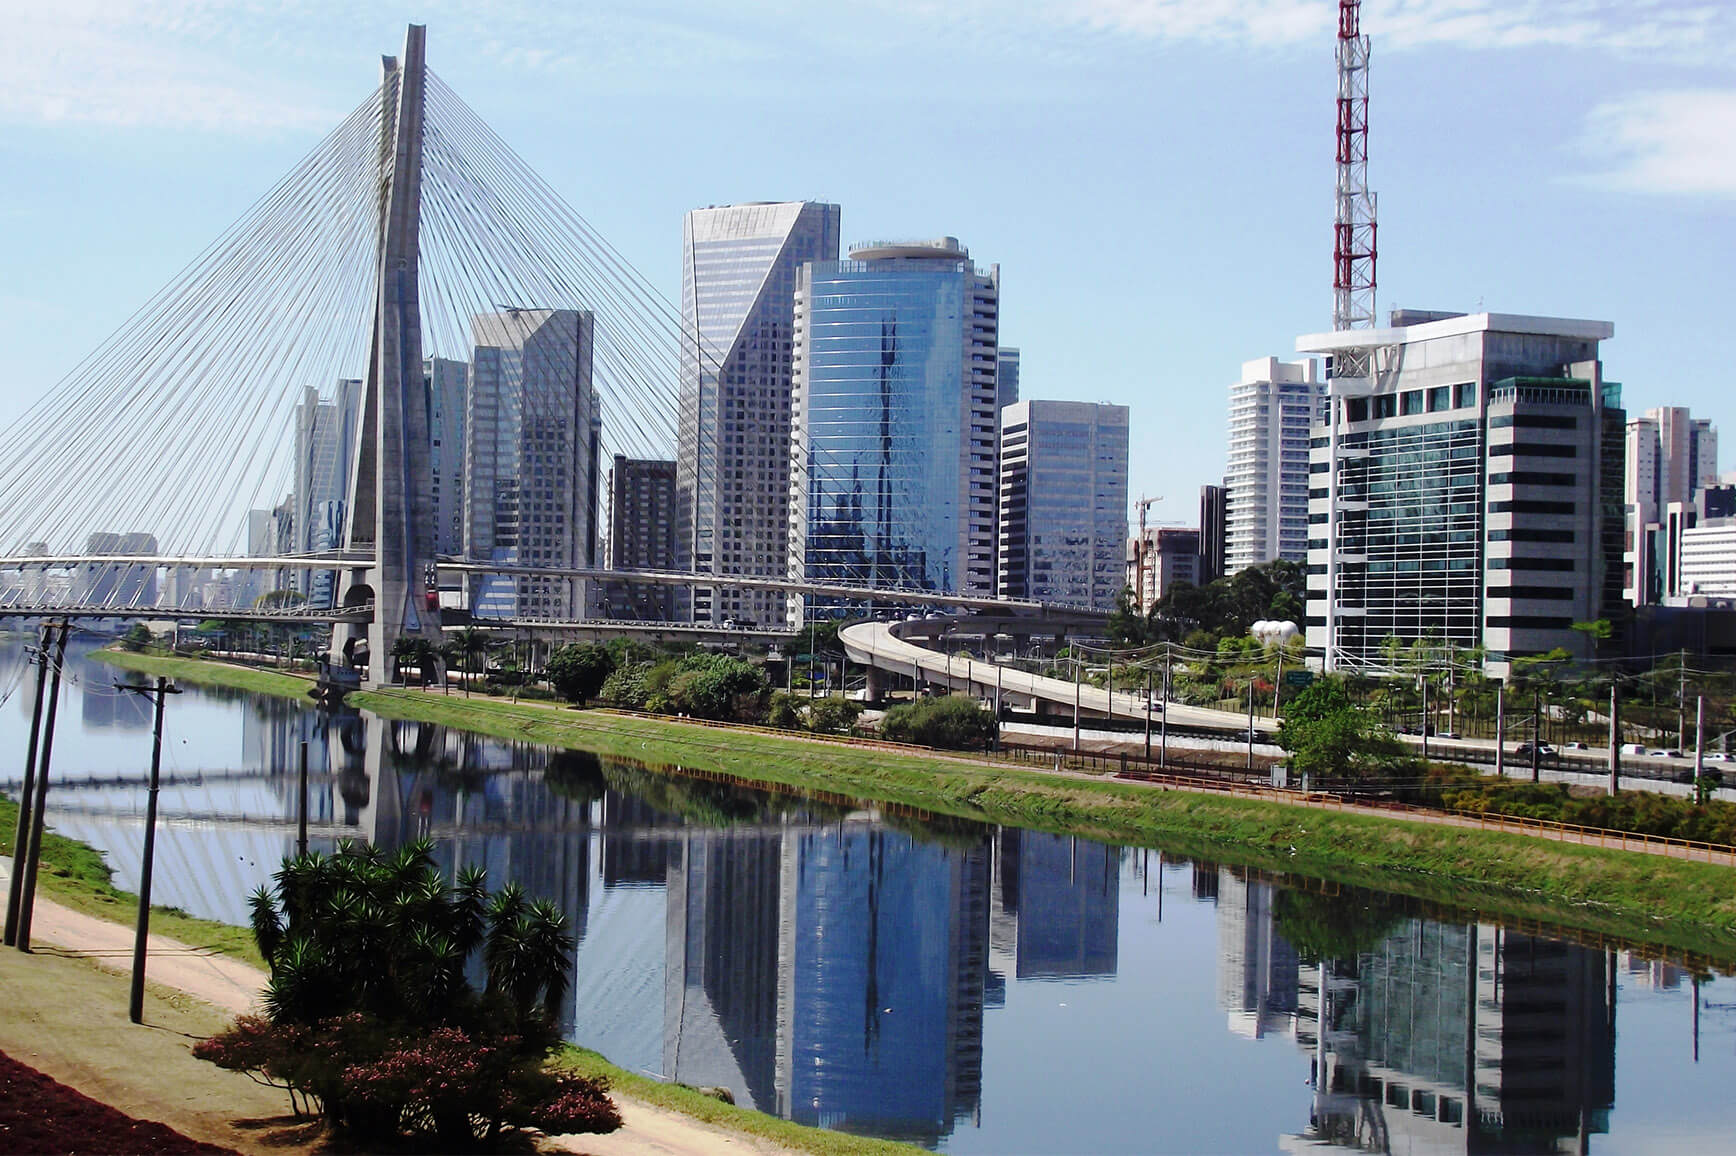 Vista aérea do Brooklin Paulista, onde se vê o rio Tietê em primeiro plano, a ponte Estaiada e, ao fundo, prédios.